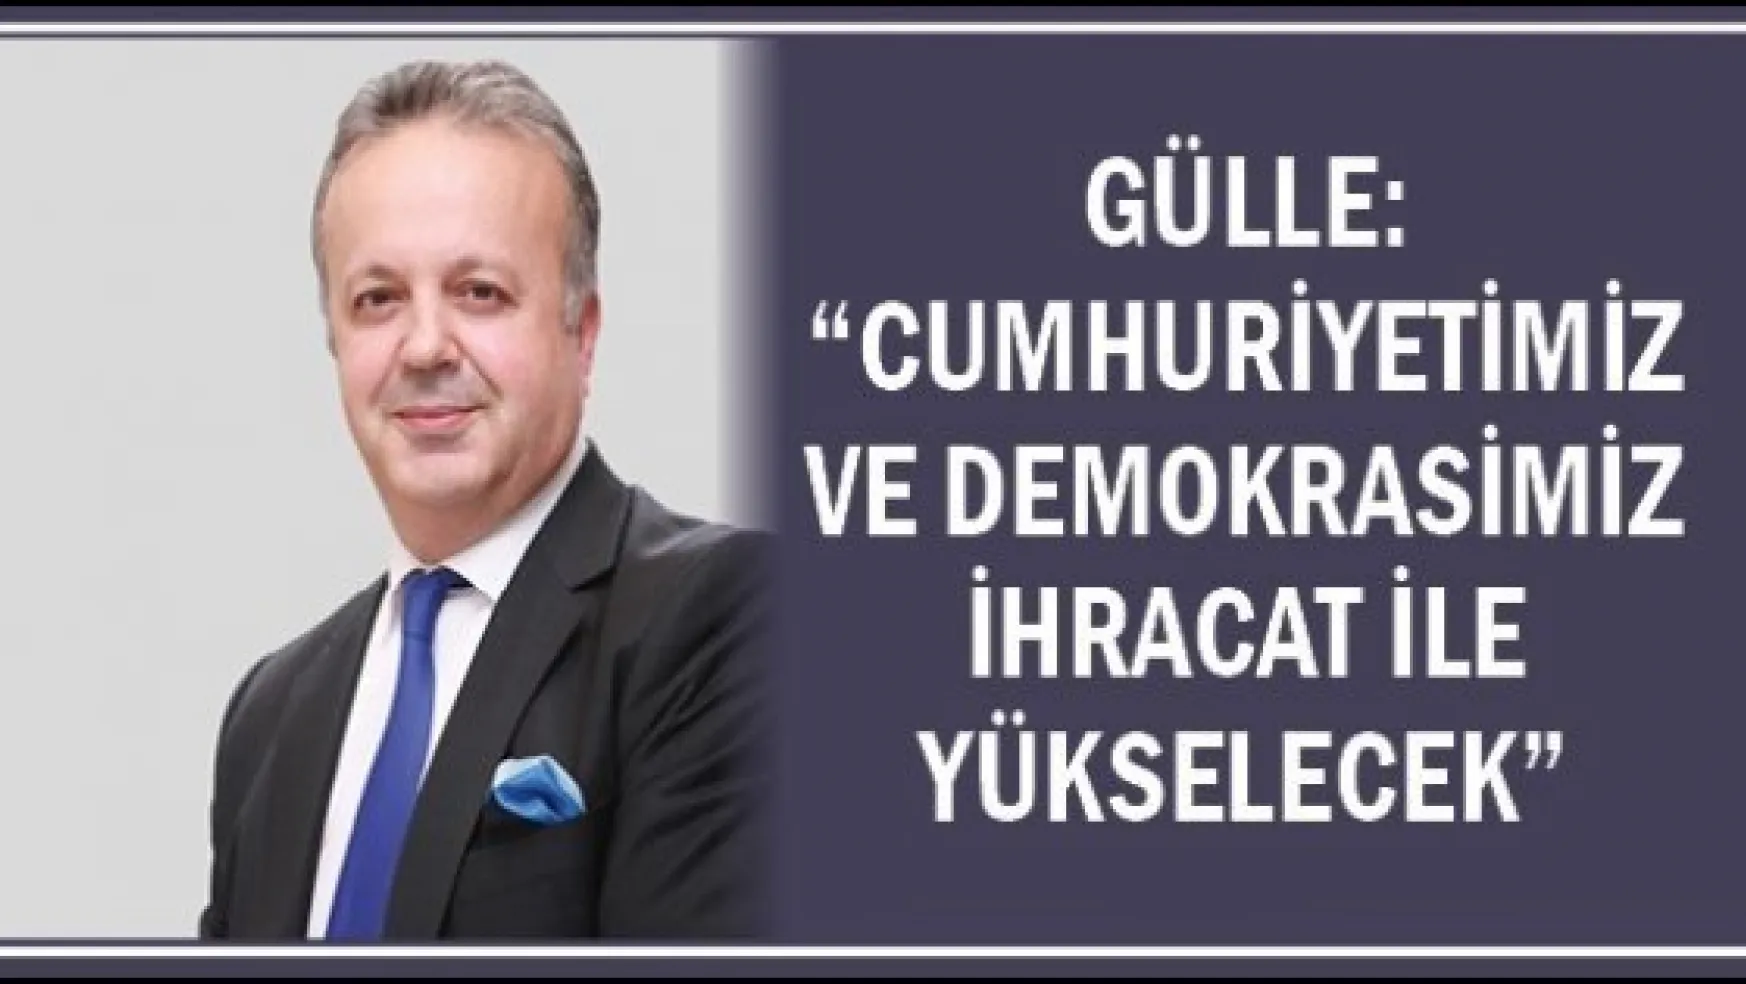 Gülle: &quotCumhuriyetimiz ve demokrasimiz ihracat ile yükselecek"